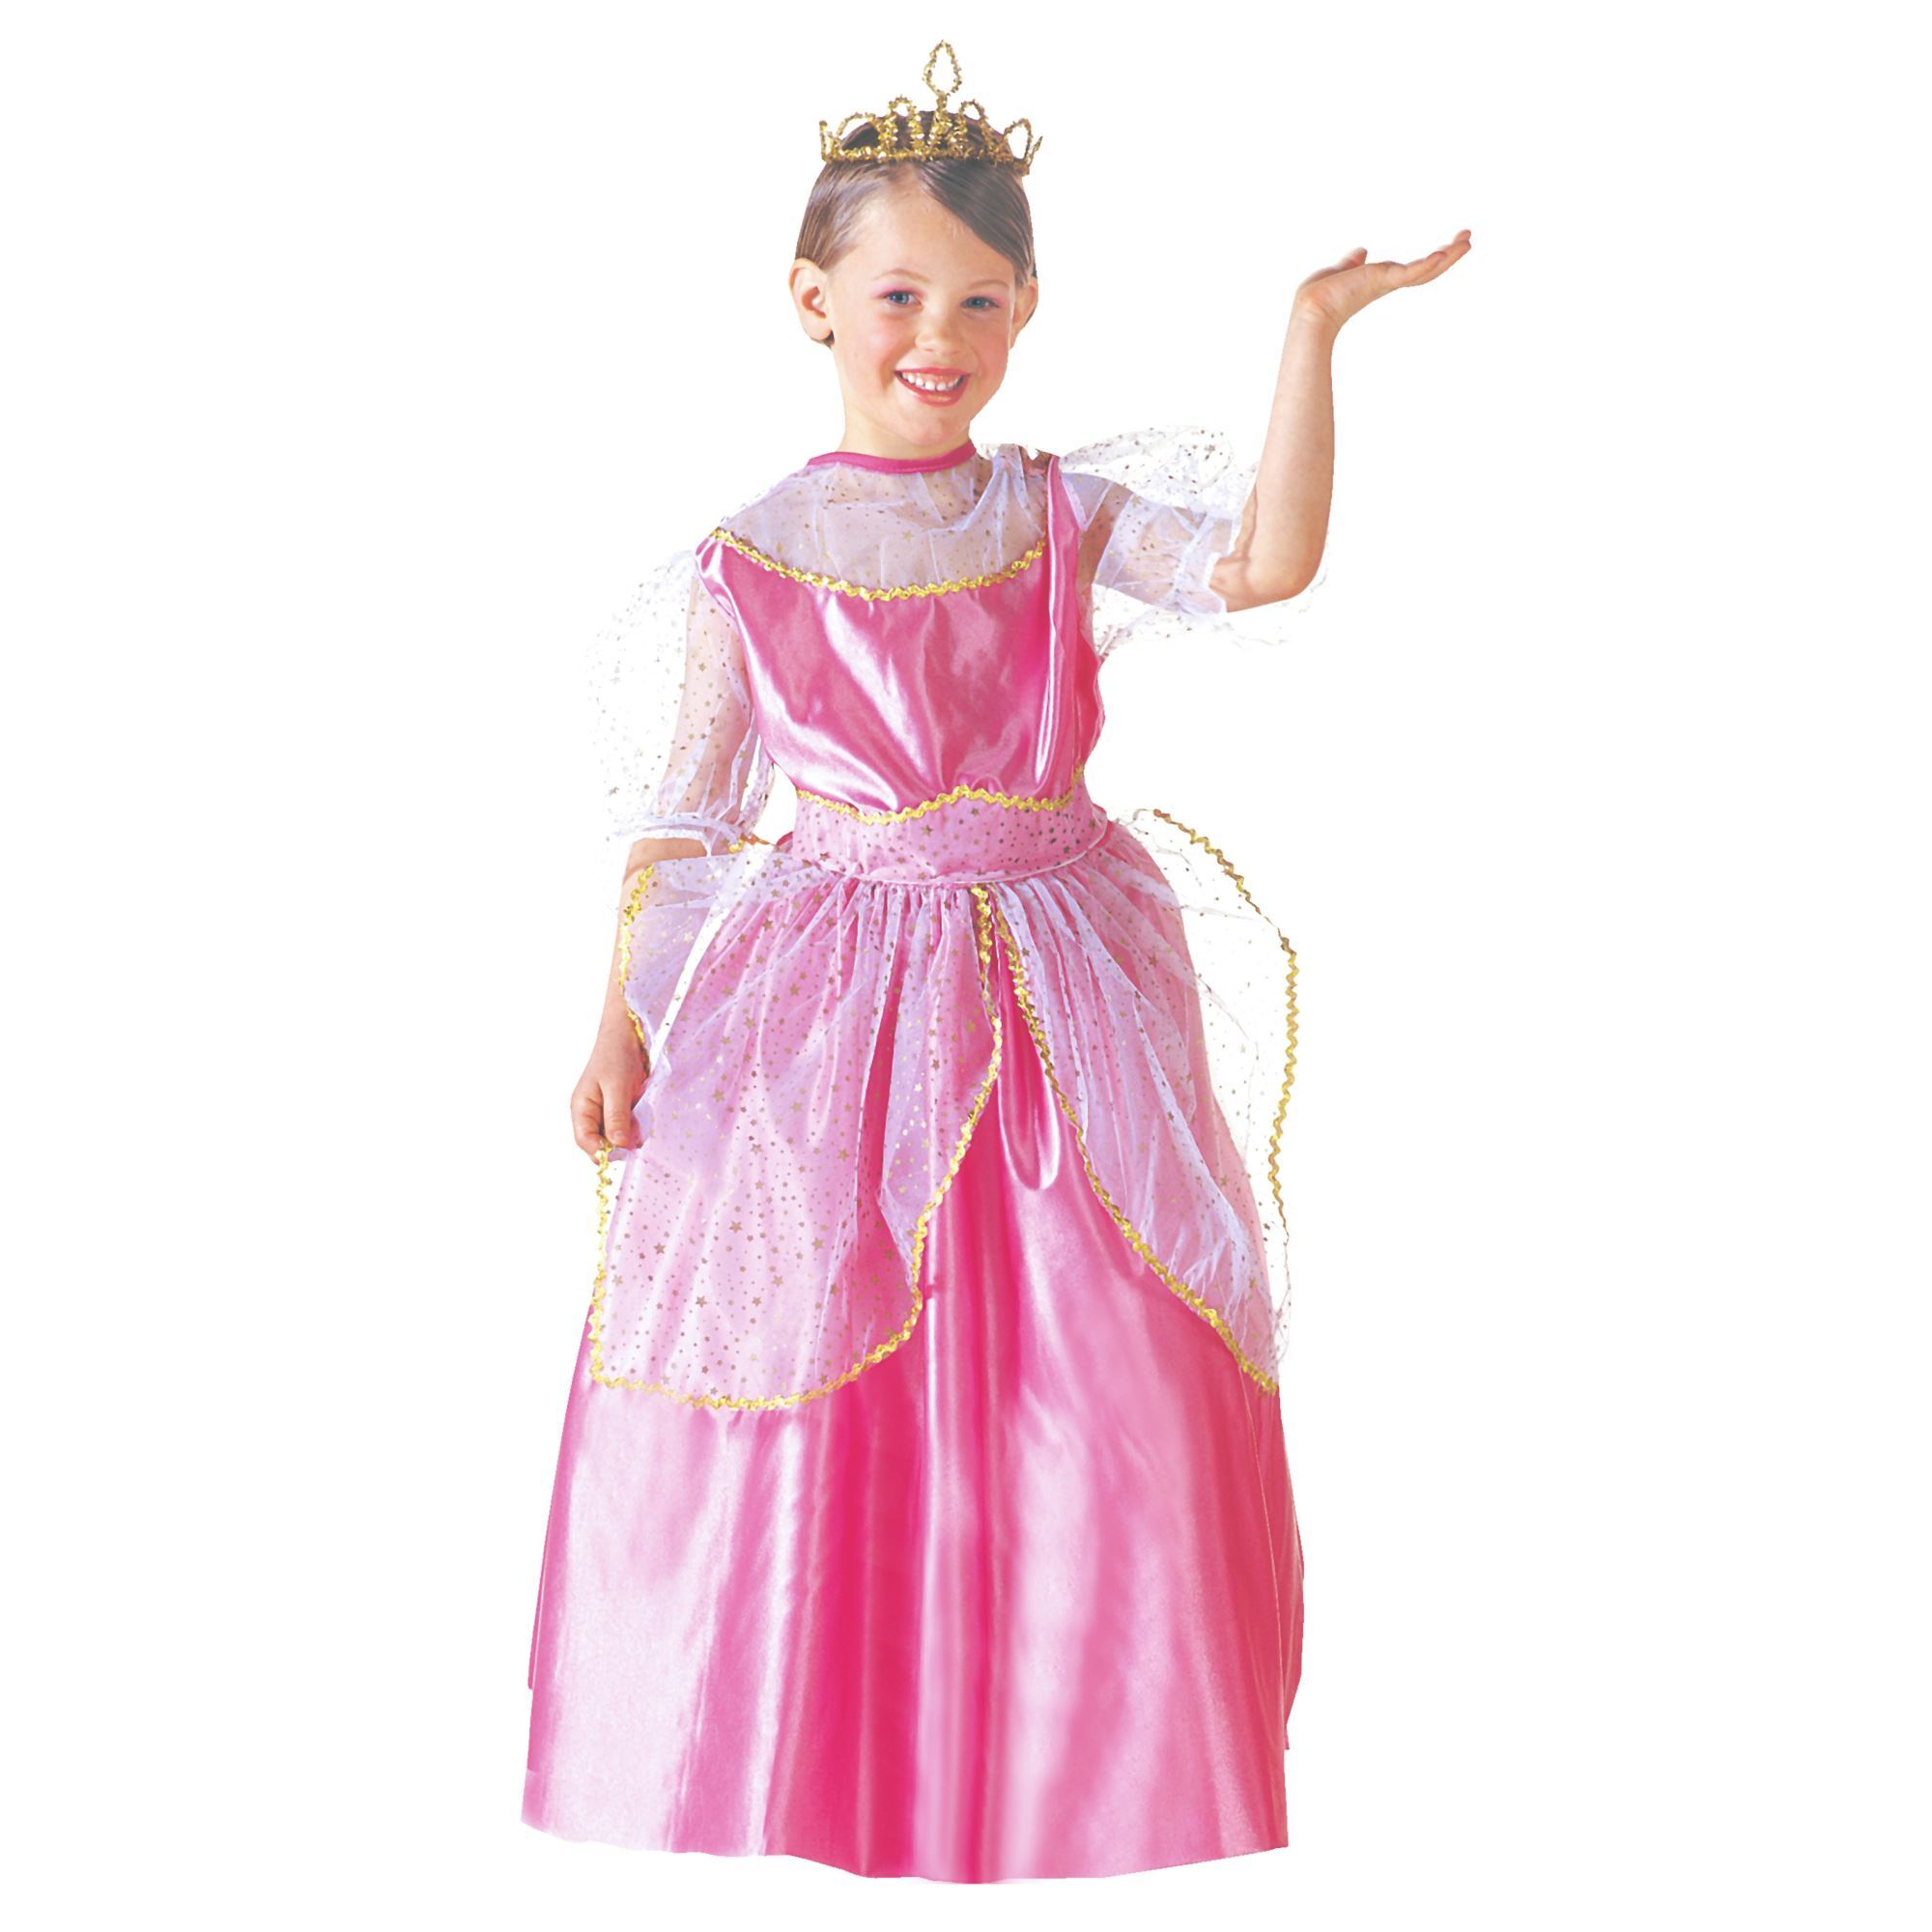 Roze prinsessen jurk met kroontje meisje